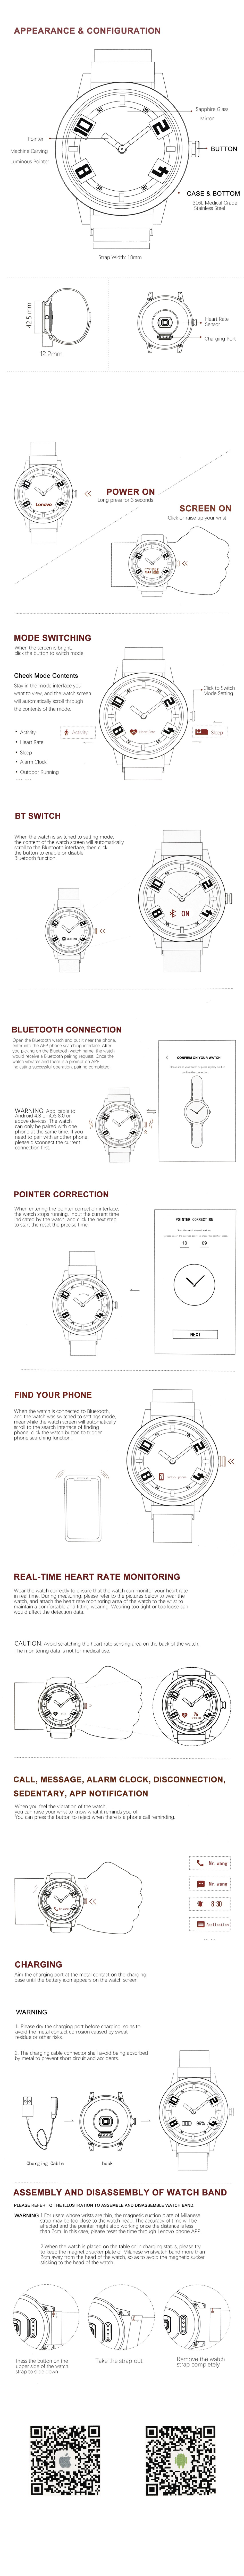 lenovo watch x hybrid smartwatch